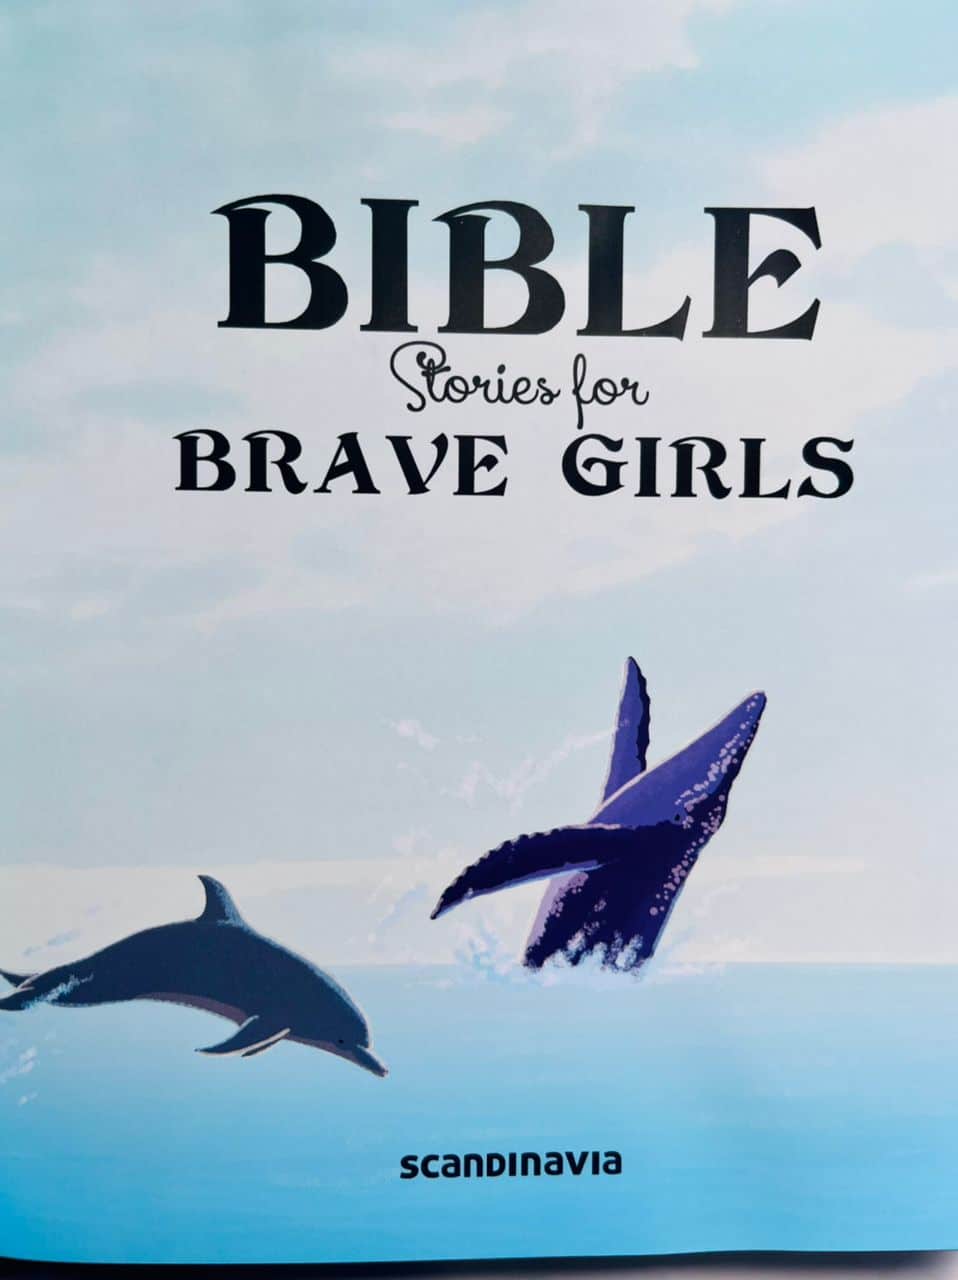 Brave girls 2